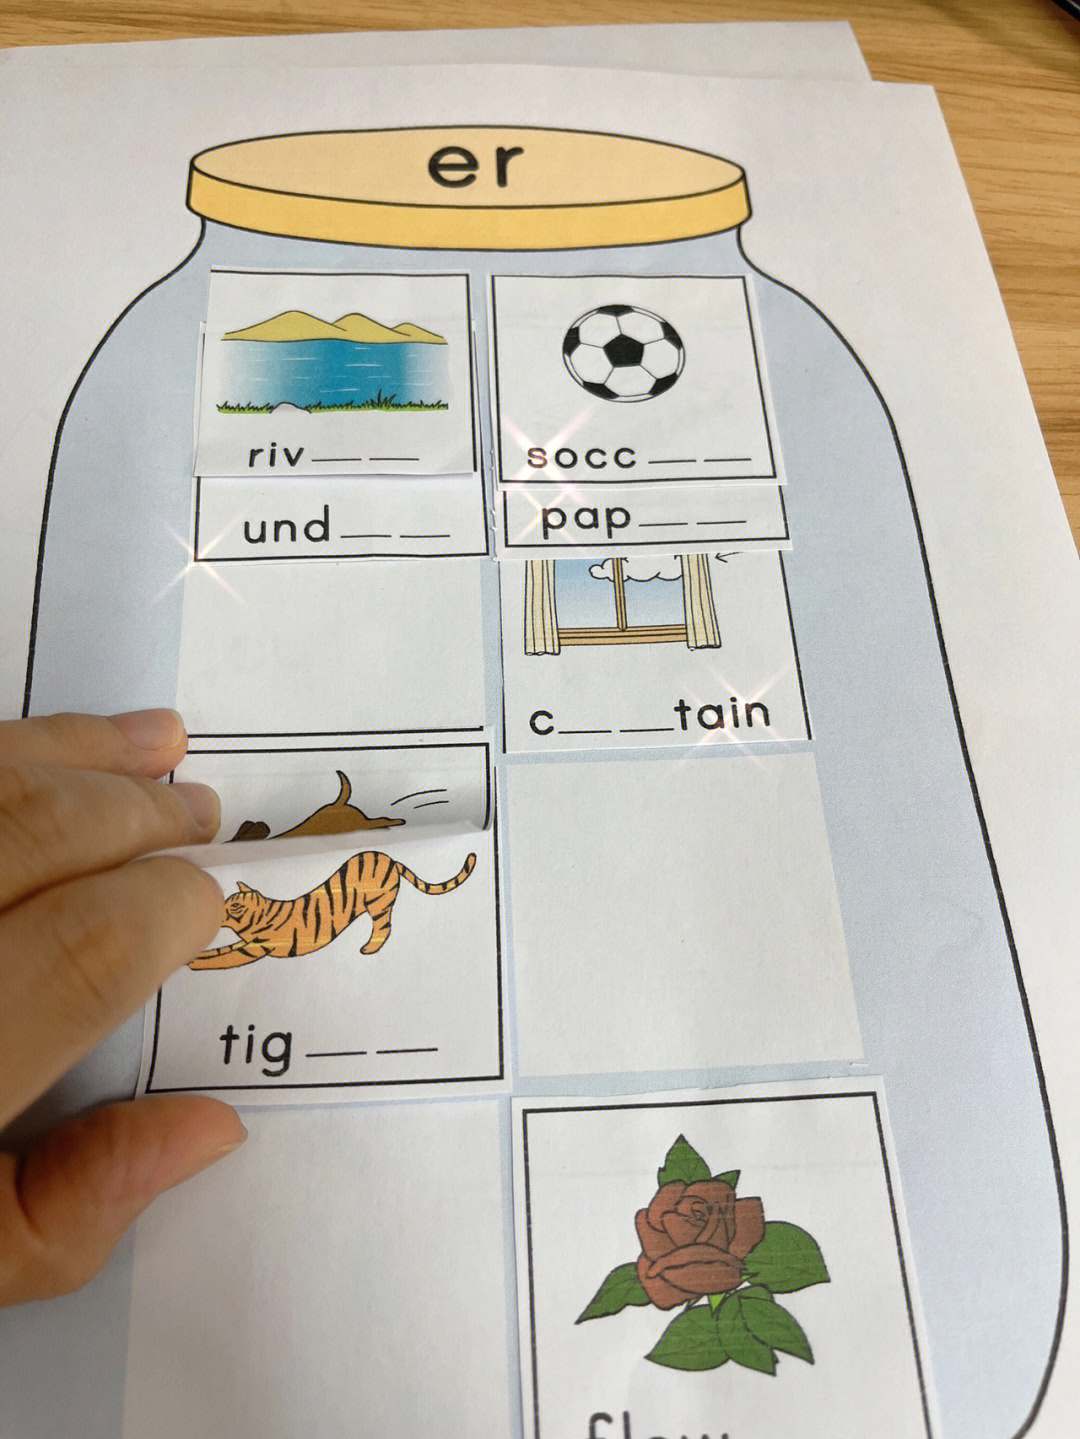 自然拼读教具制作模板图片